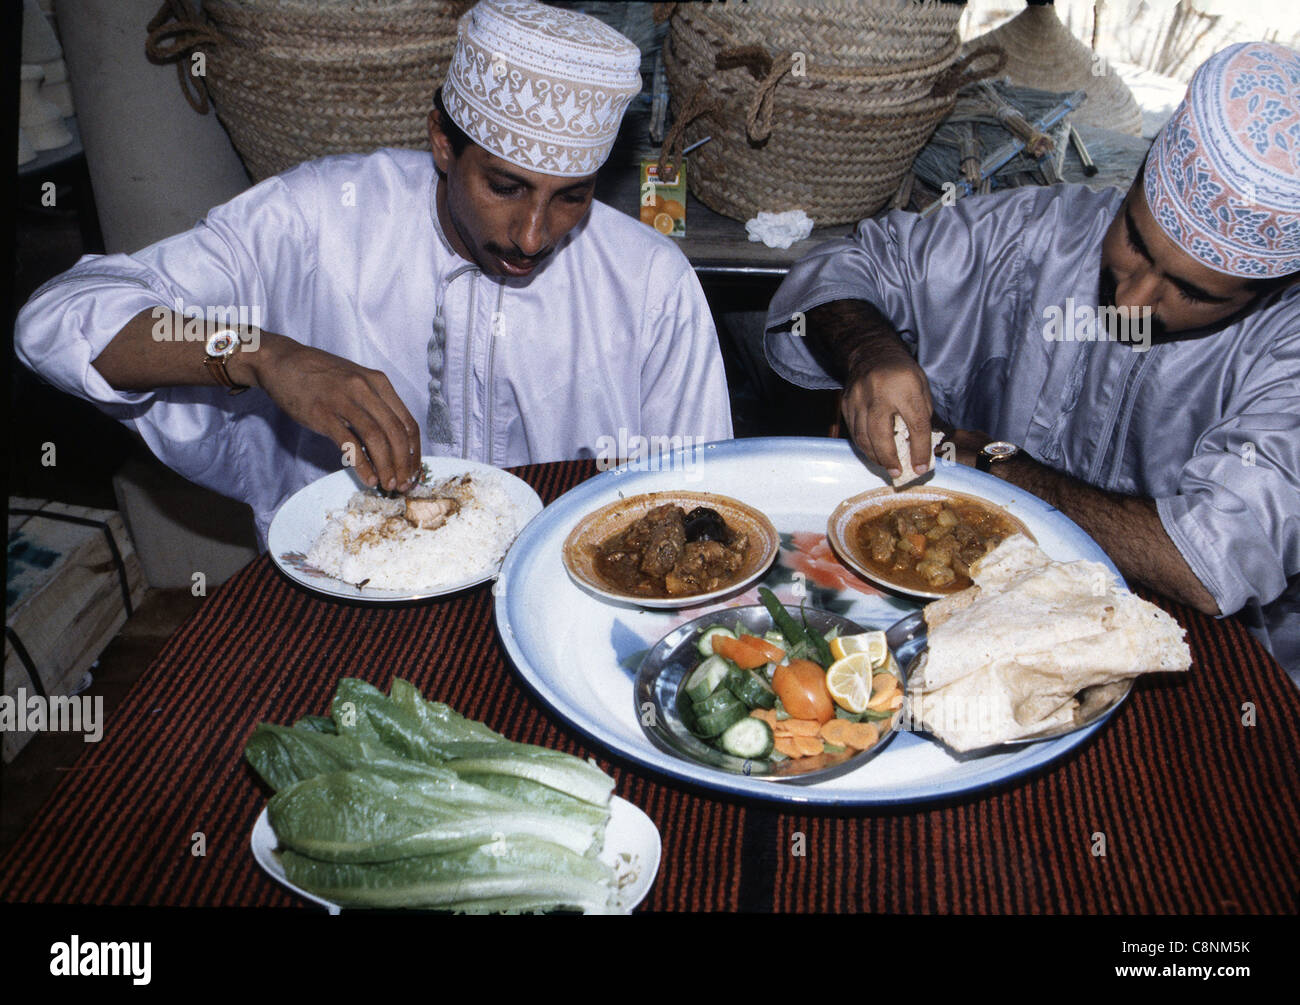 Zwei muslimische Männer essen nur mit der rechten Hand, um Portionen von Lebensmitteln auszuwählen, Oman Stockfoto